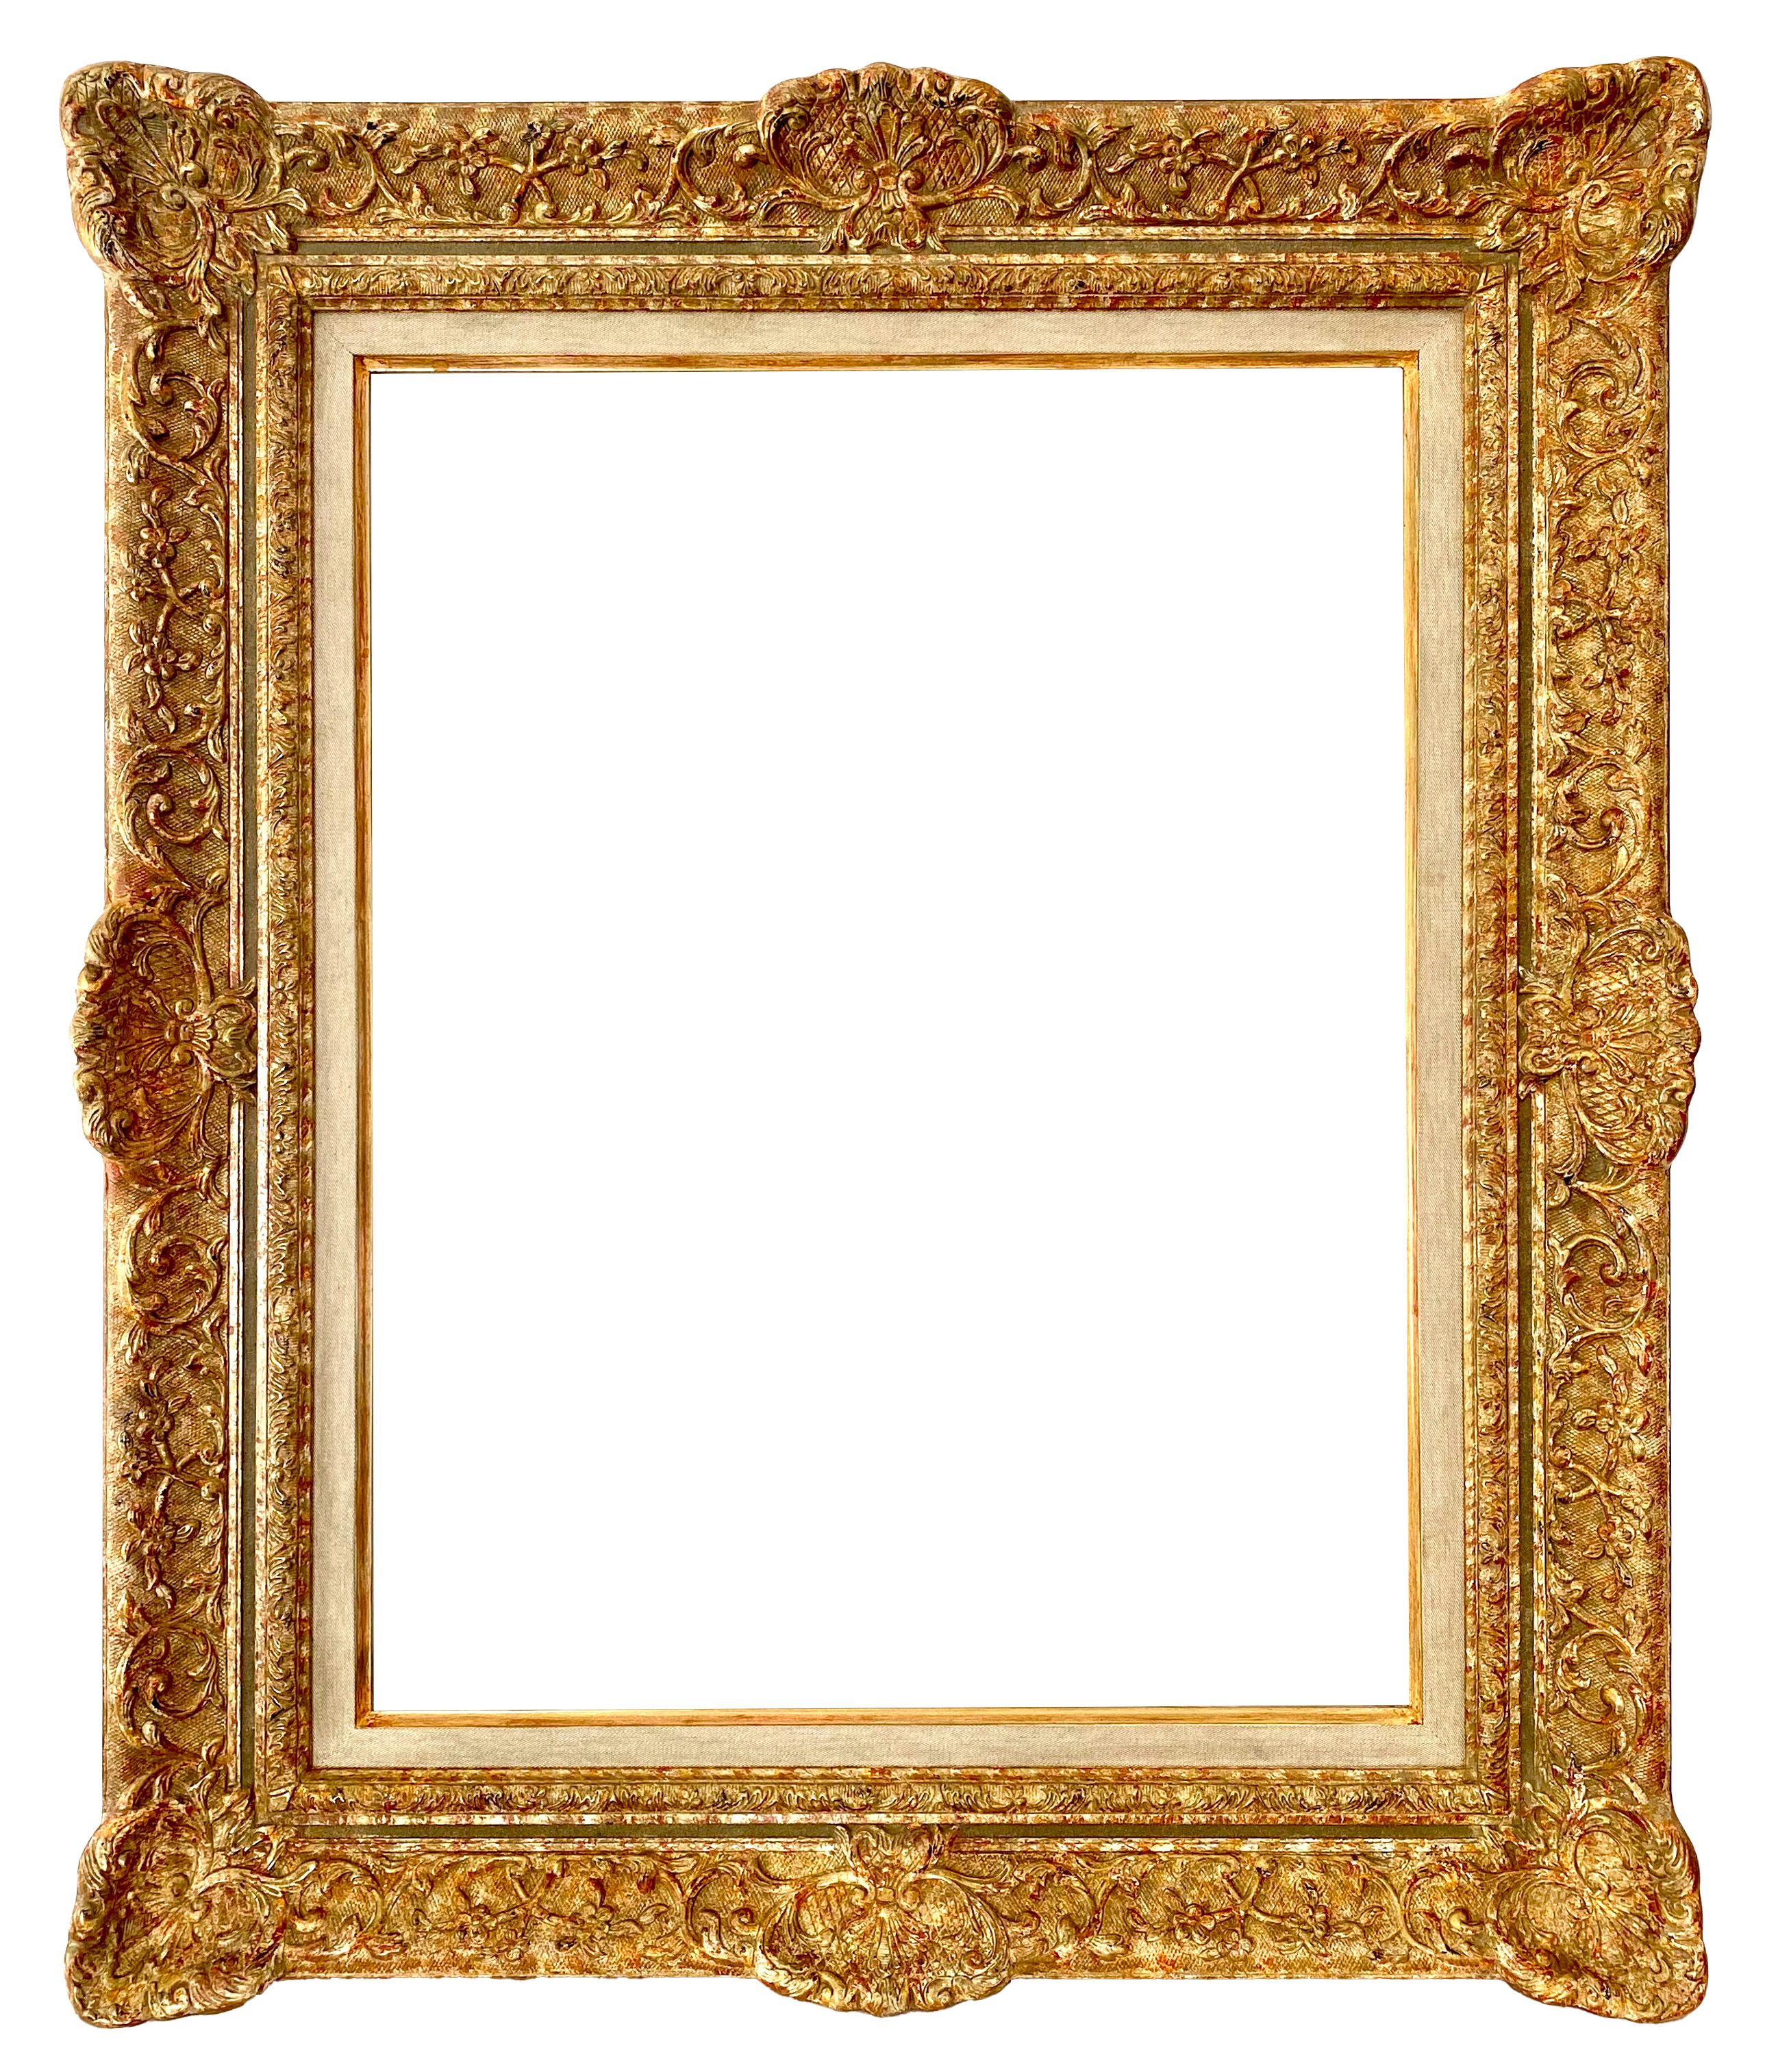 Cadre de style Louis XIV - 66,00 x 51,00 - REF - 1687